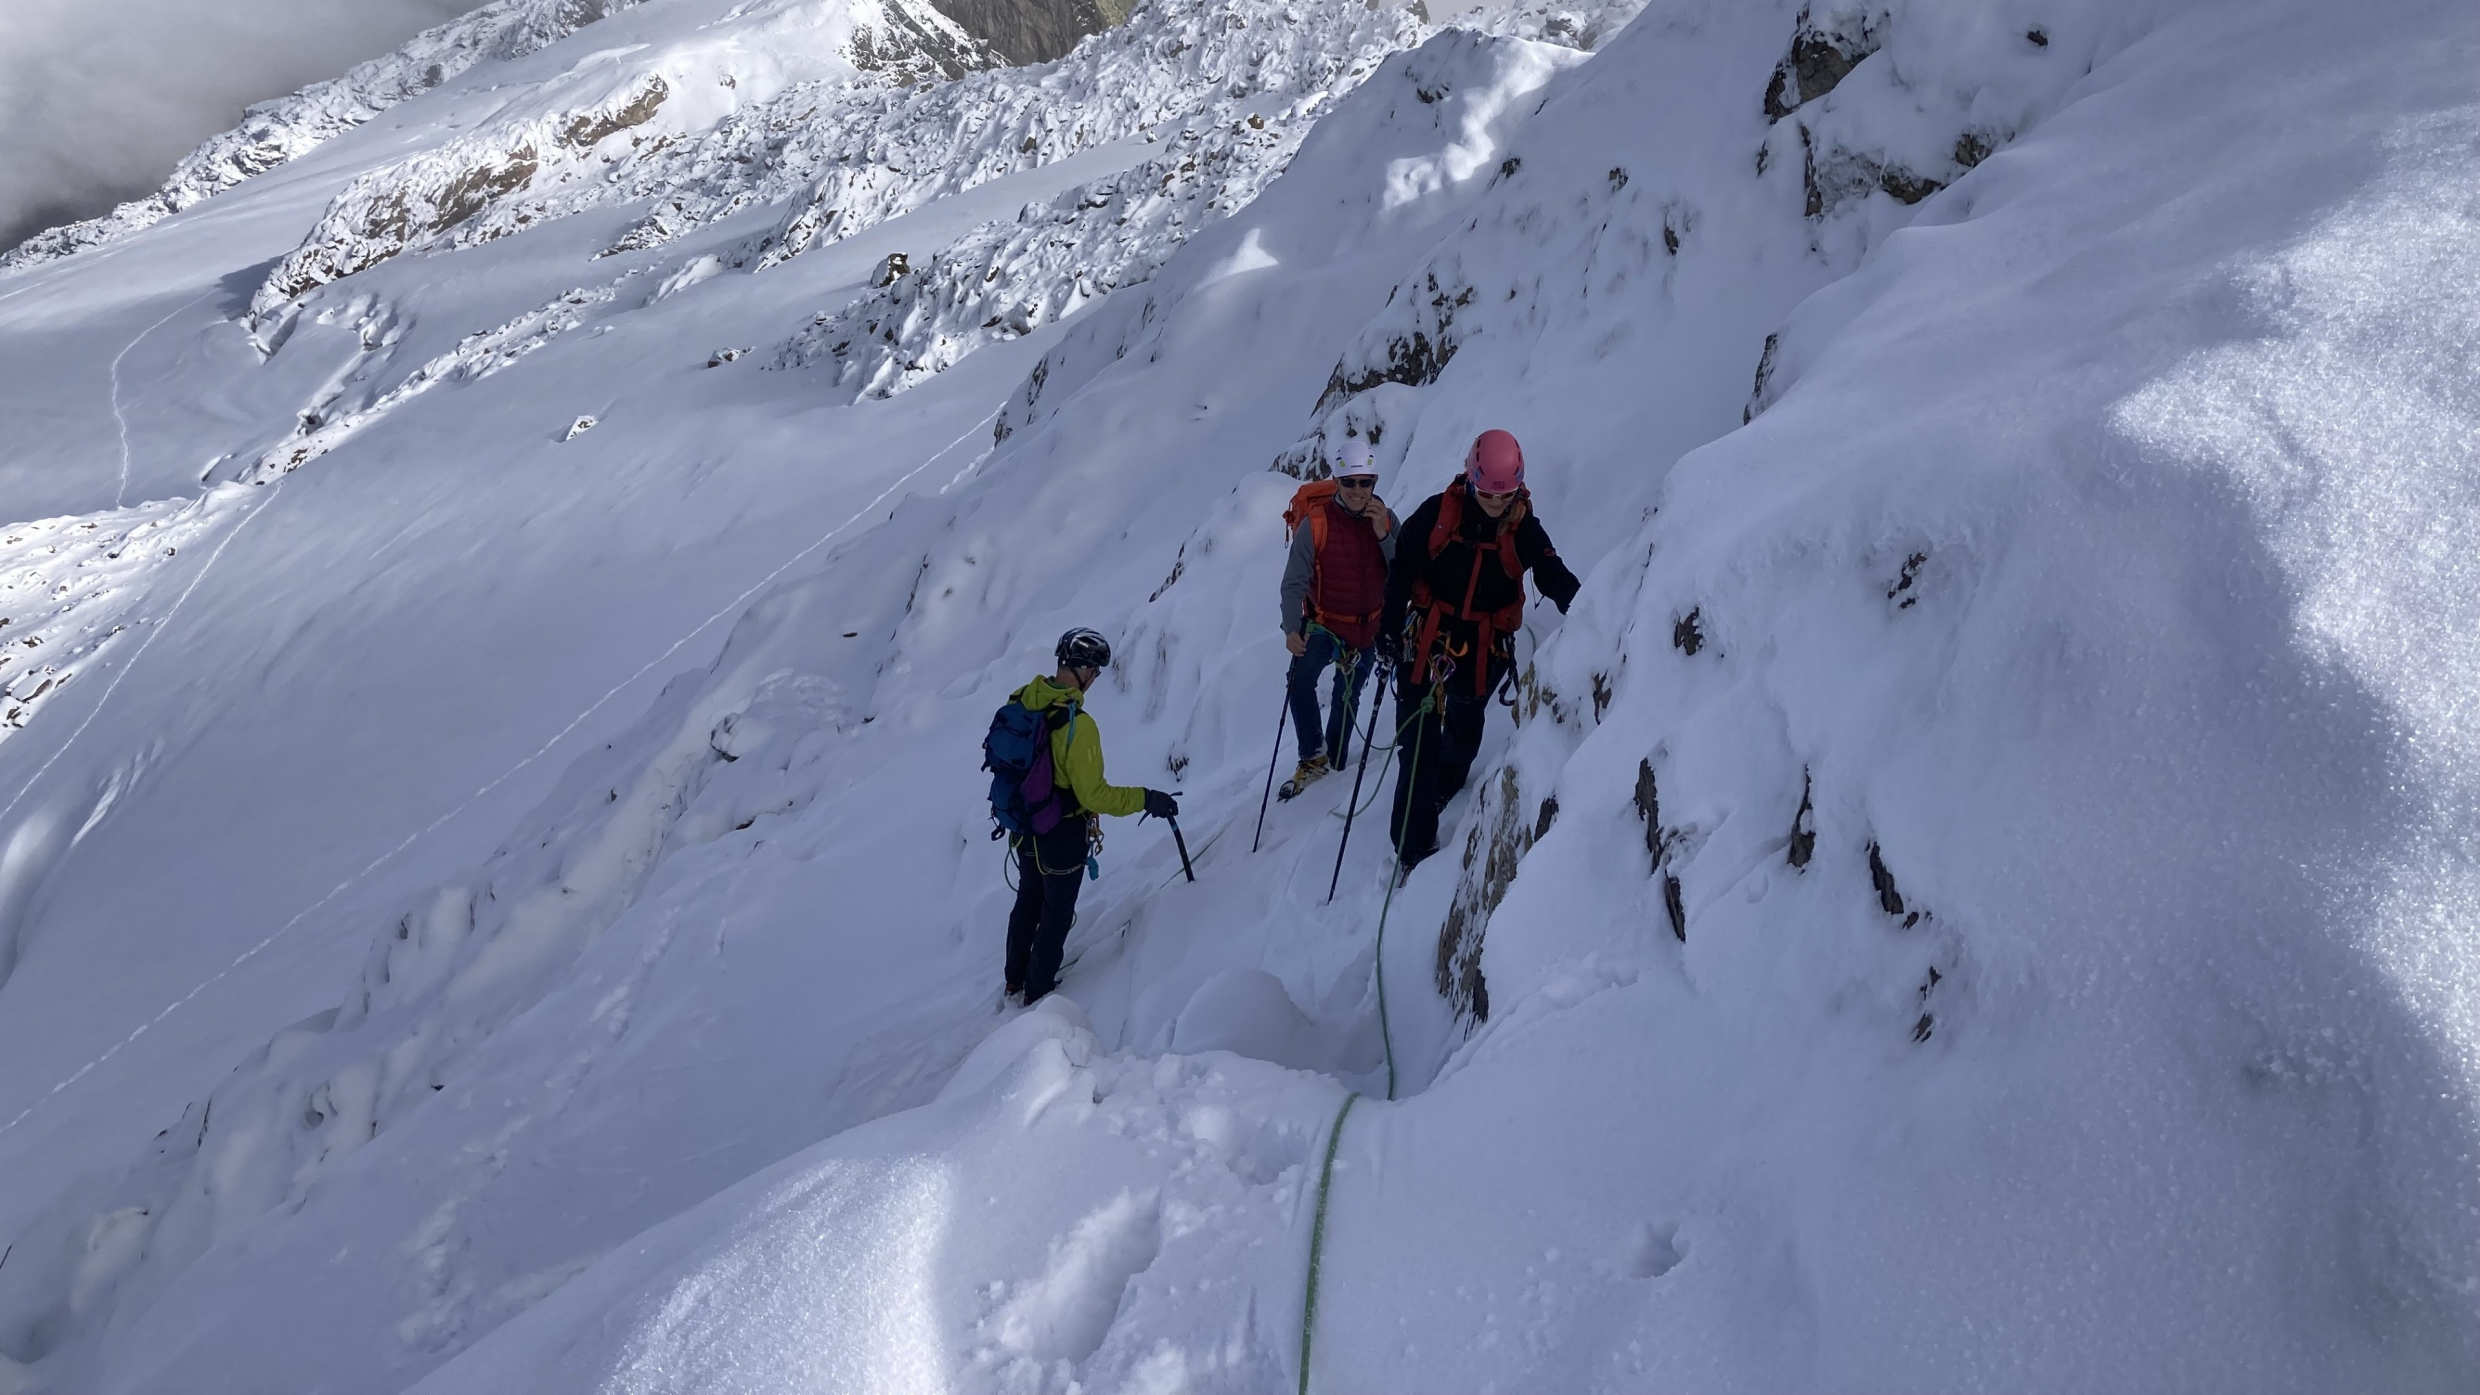 Berg+Ski: Winterliche Verhältnisse am Grassen